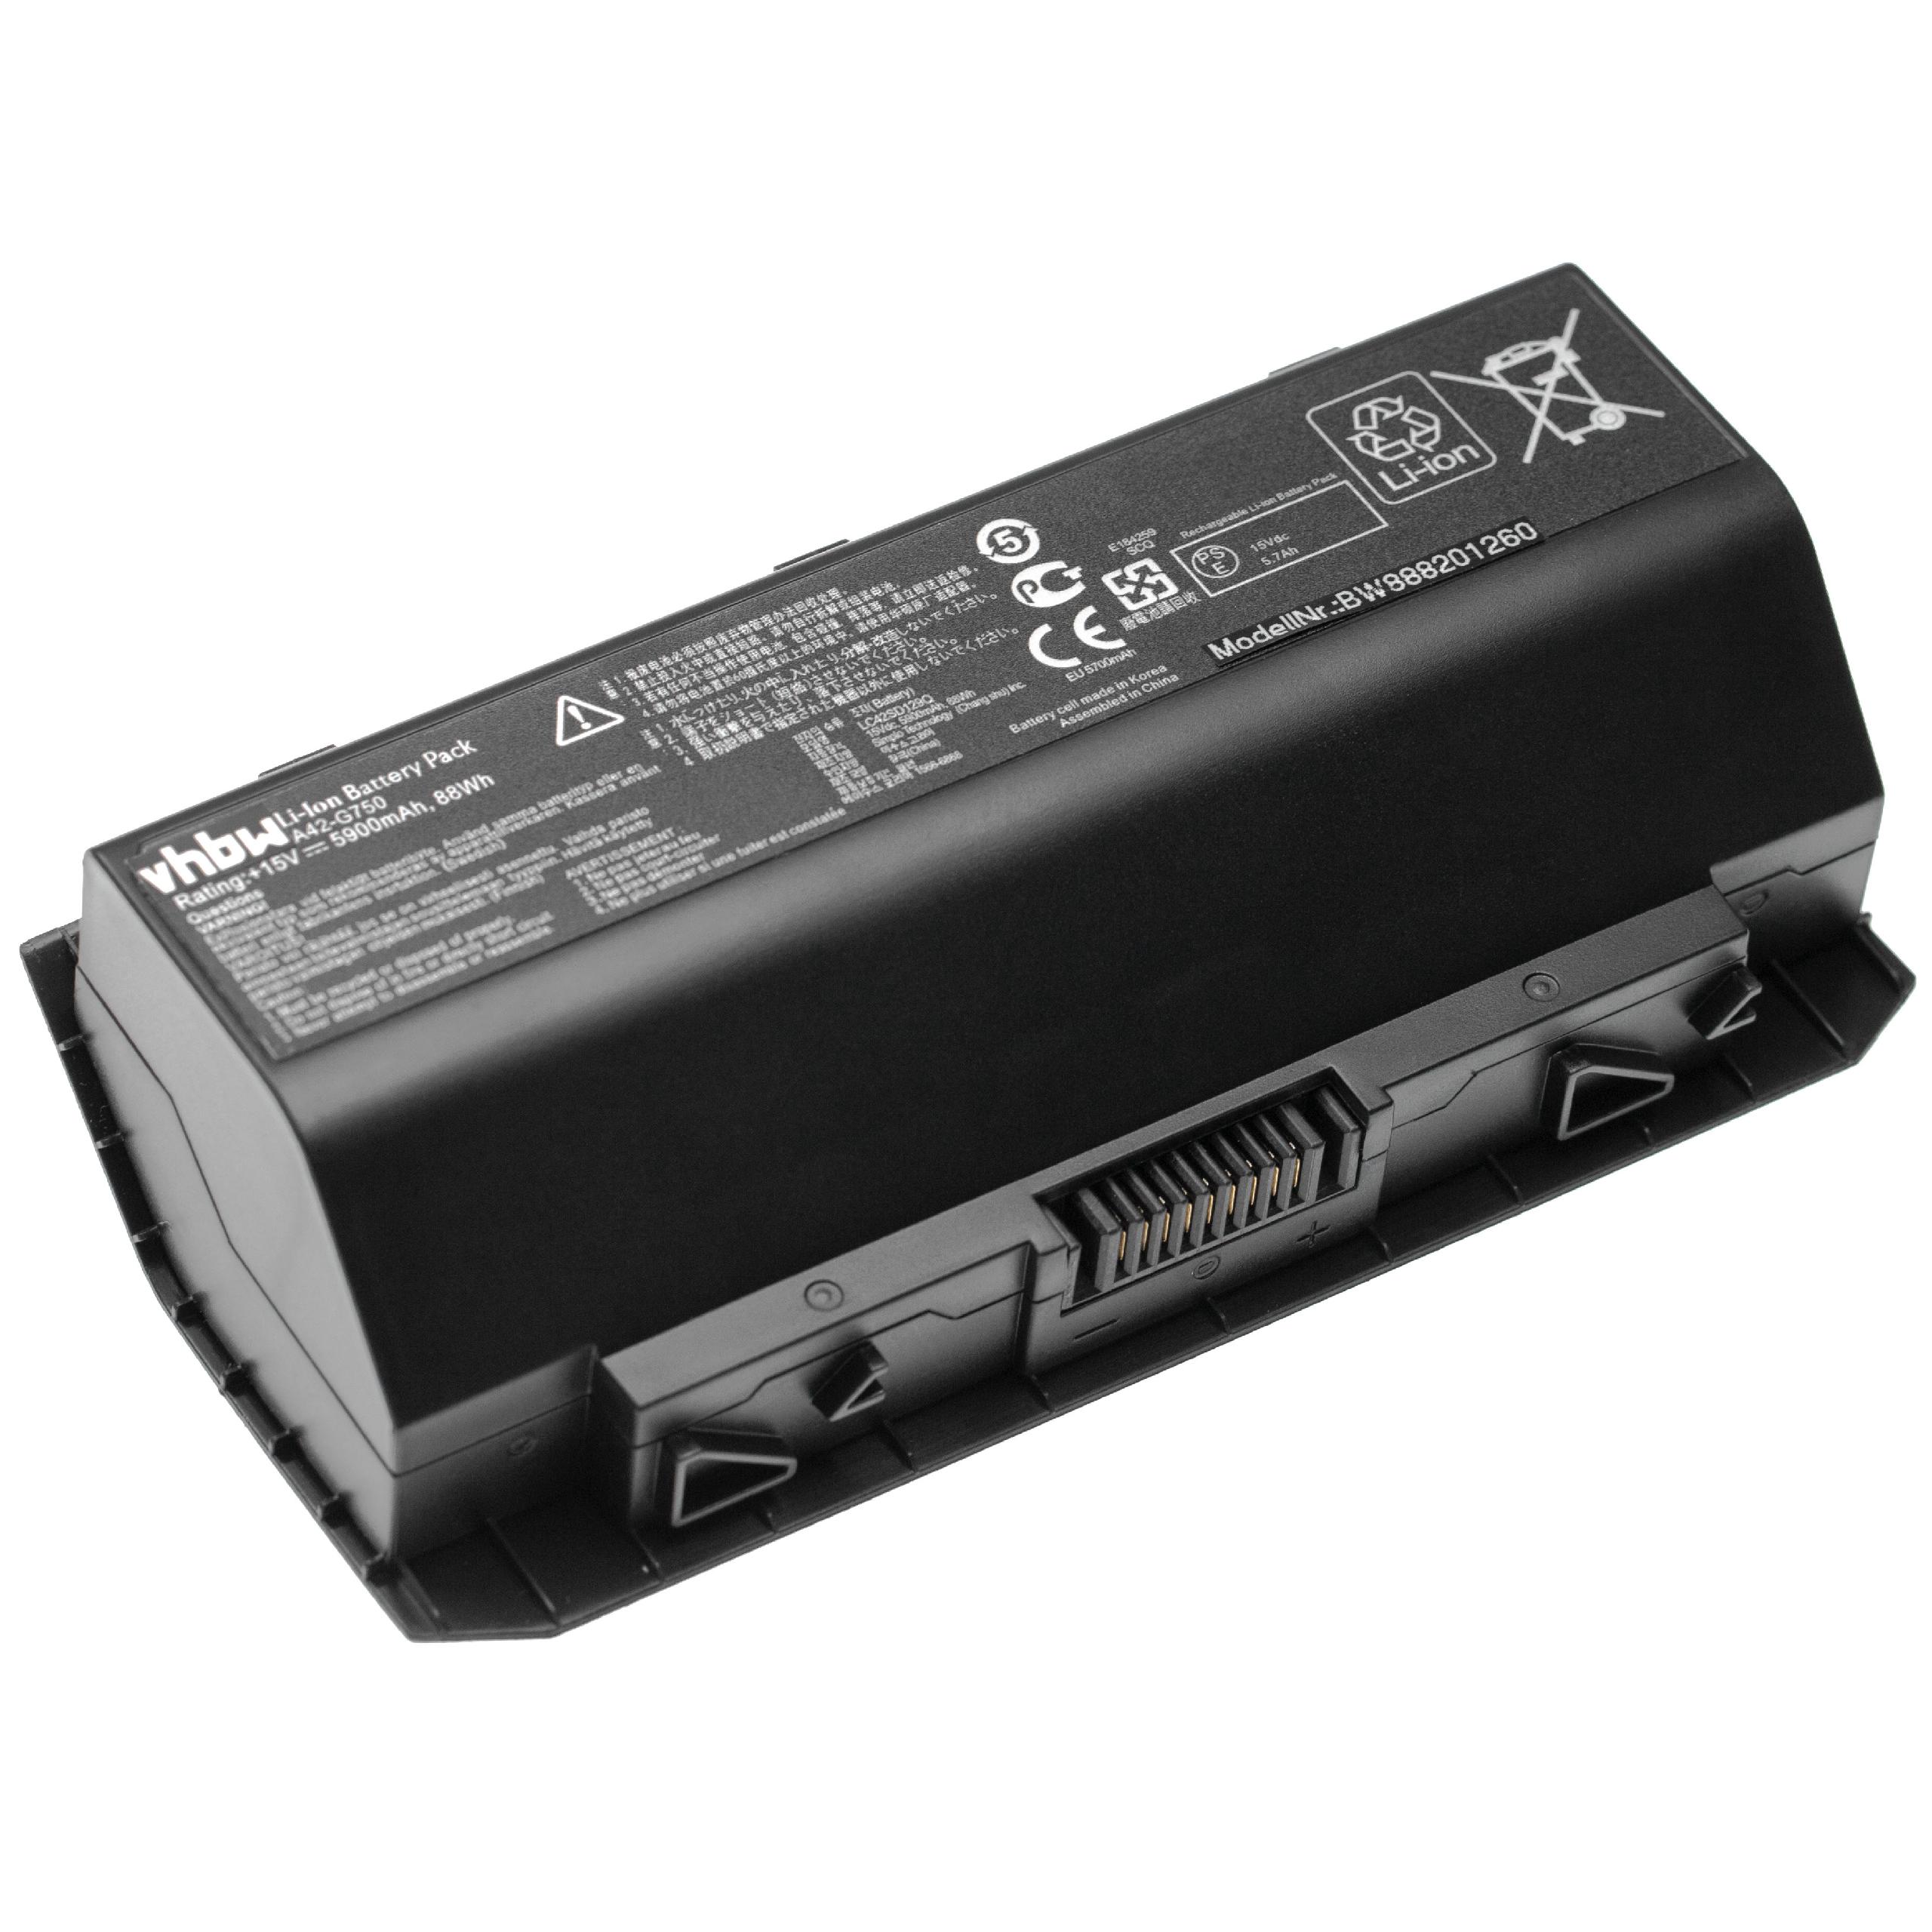 Batterie remplace Asus A42-G750 pour ordinateur portable - 5900mAh 15V Li-polymère, noir